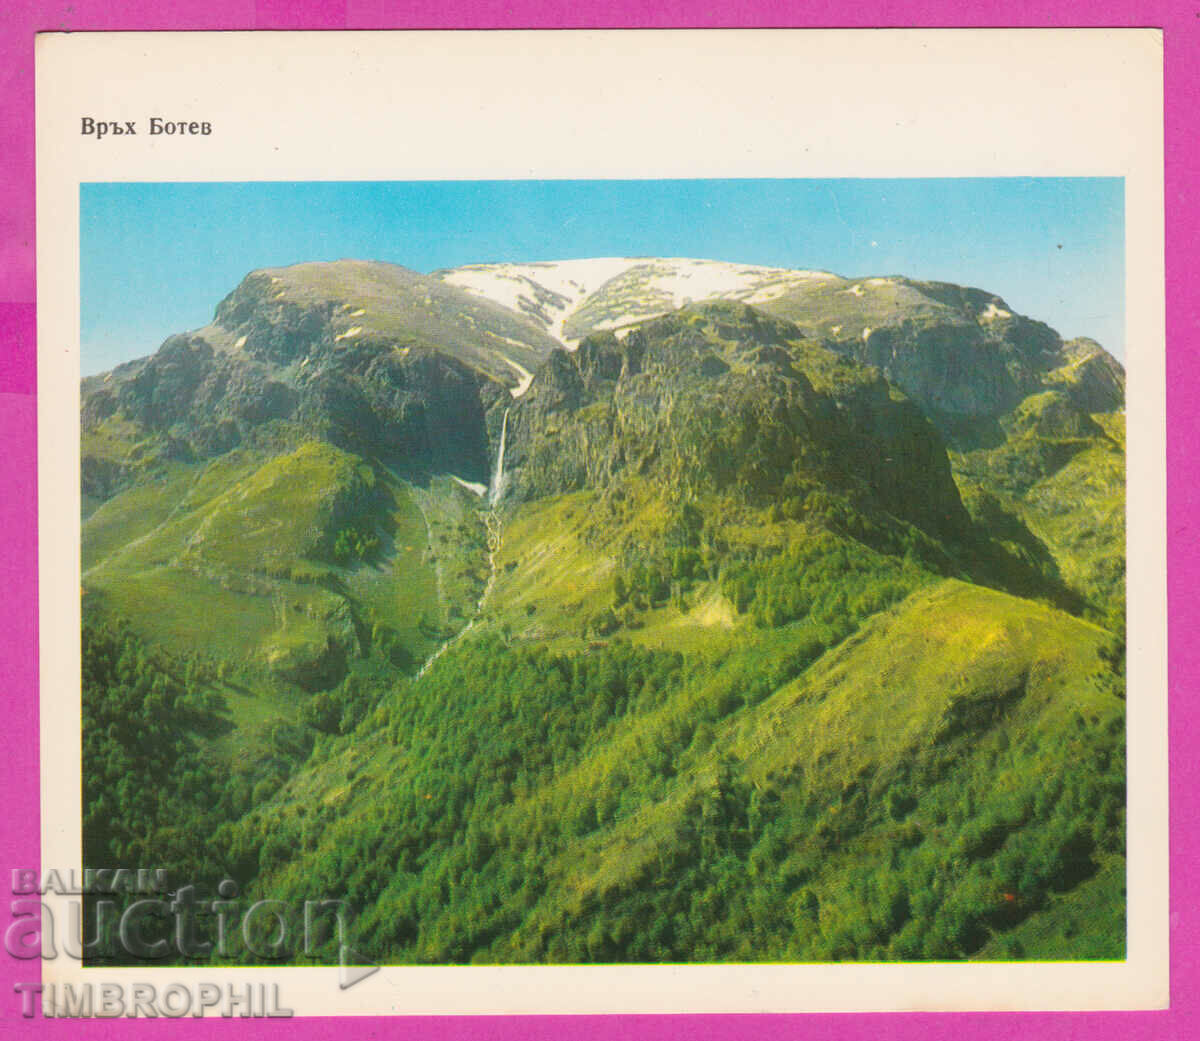 274565 / Botev peak is located in Troyansko-Kaloferska planina